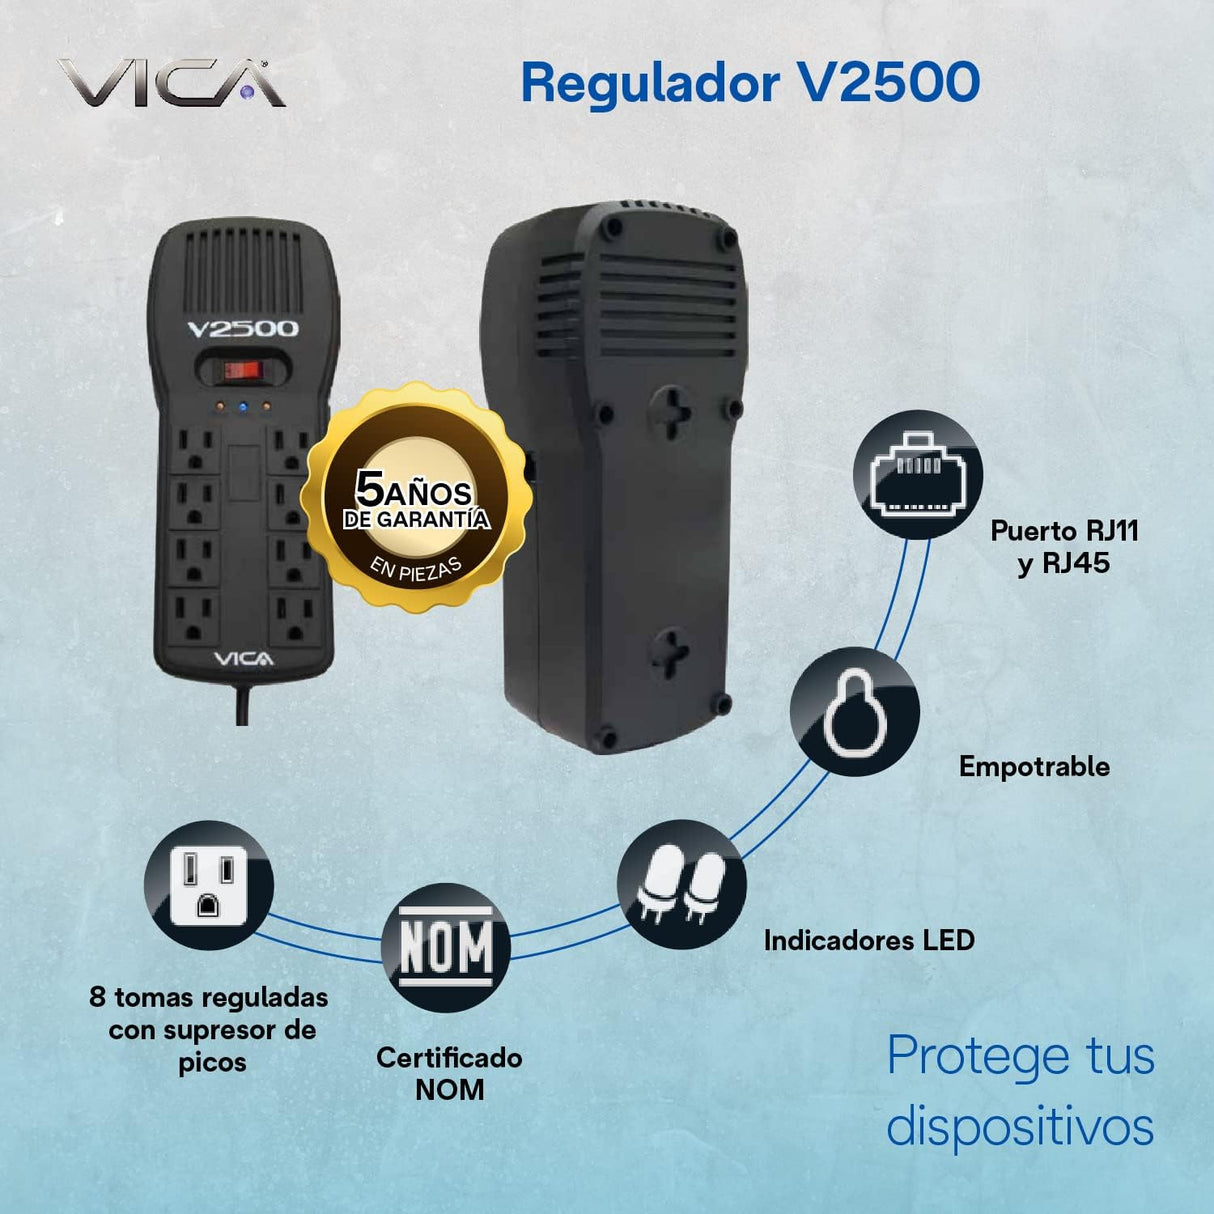 Regulador Electrónico de Voltaje VICA V2500, 2500VA, 300J, Entrada 100-127V, con Contactos Indicares LED, Puertos RJ11-45, Negro FullOffice.com 